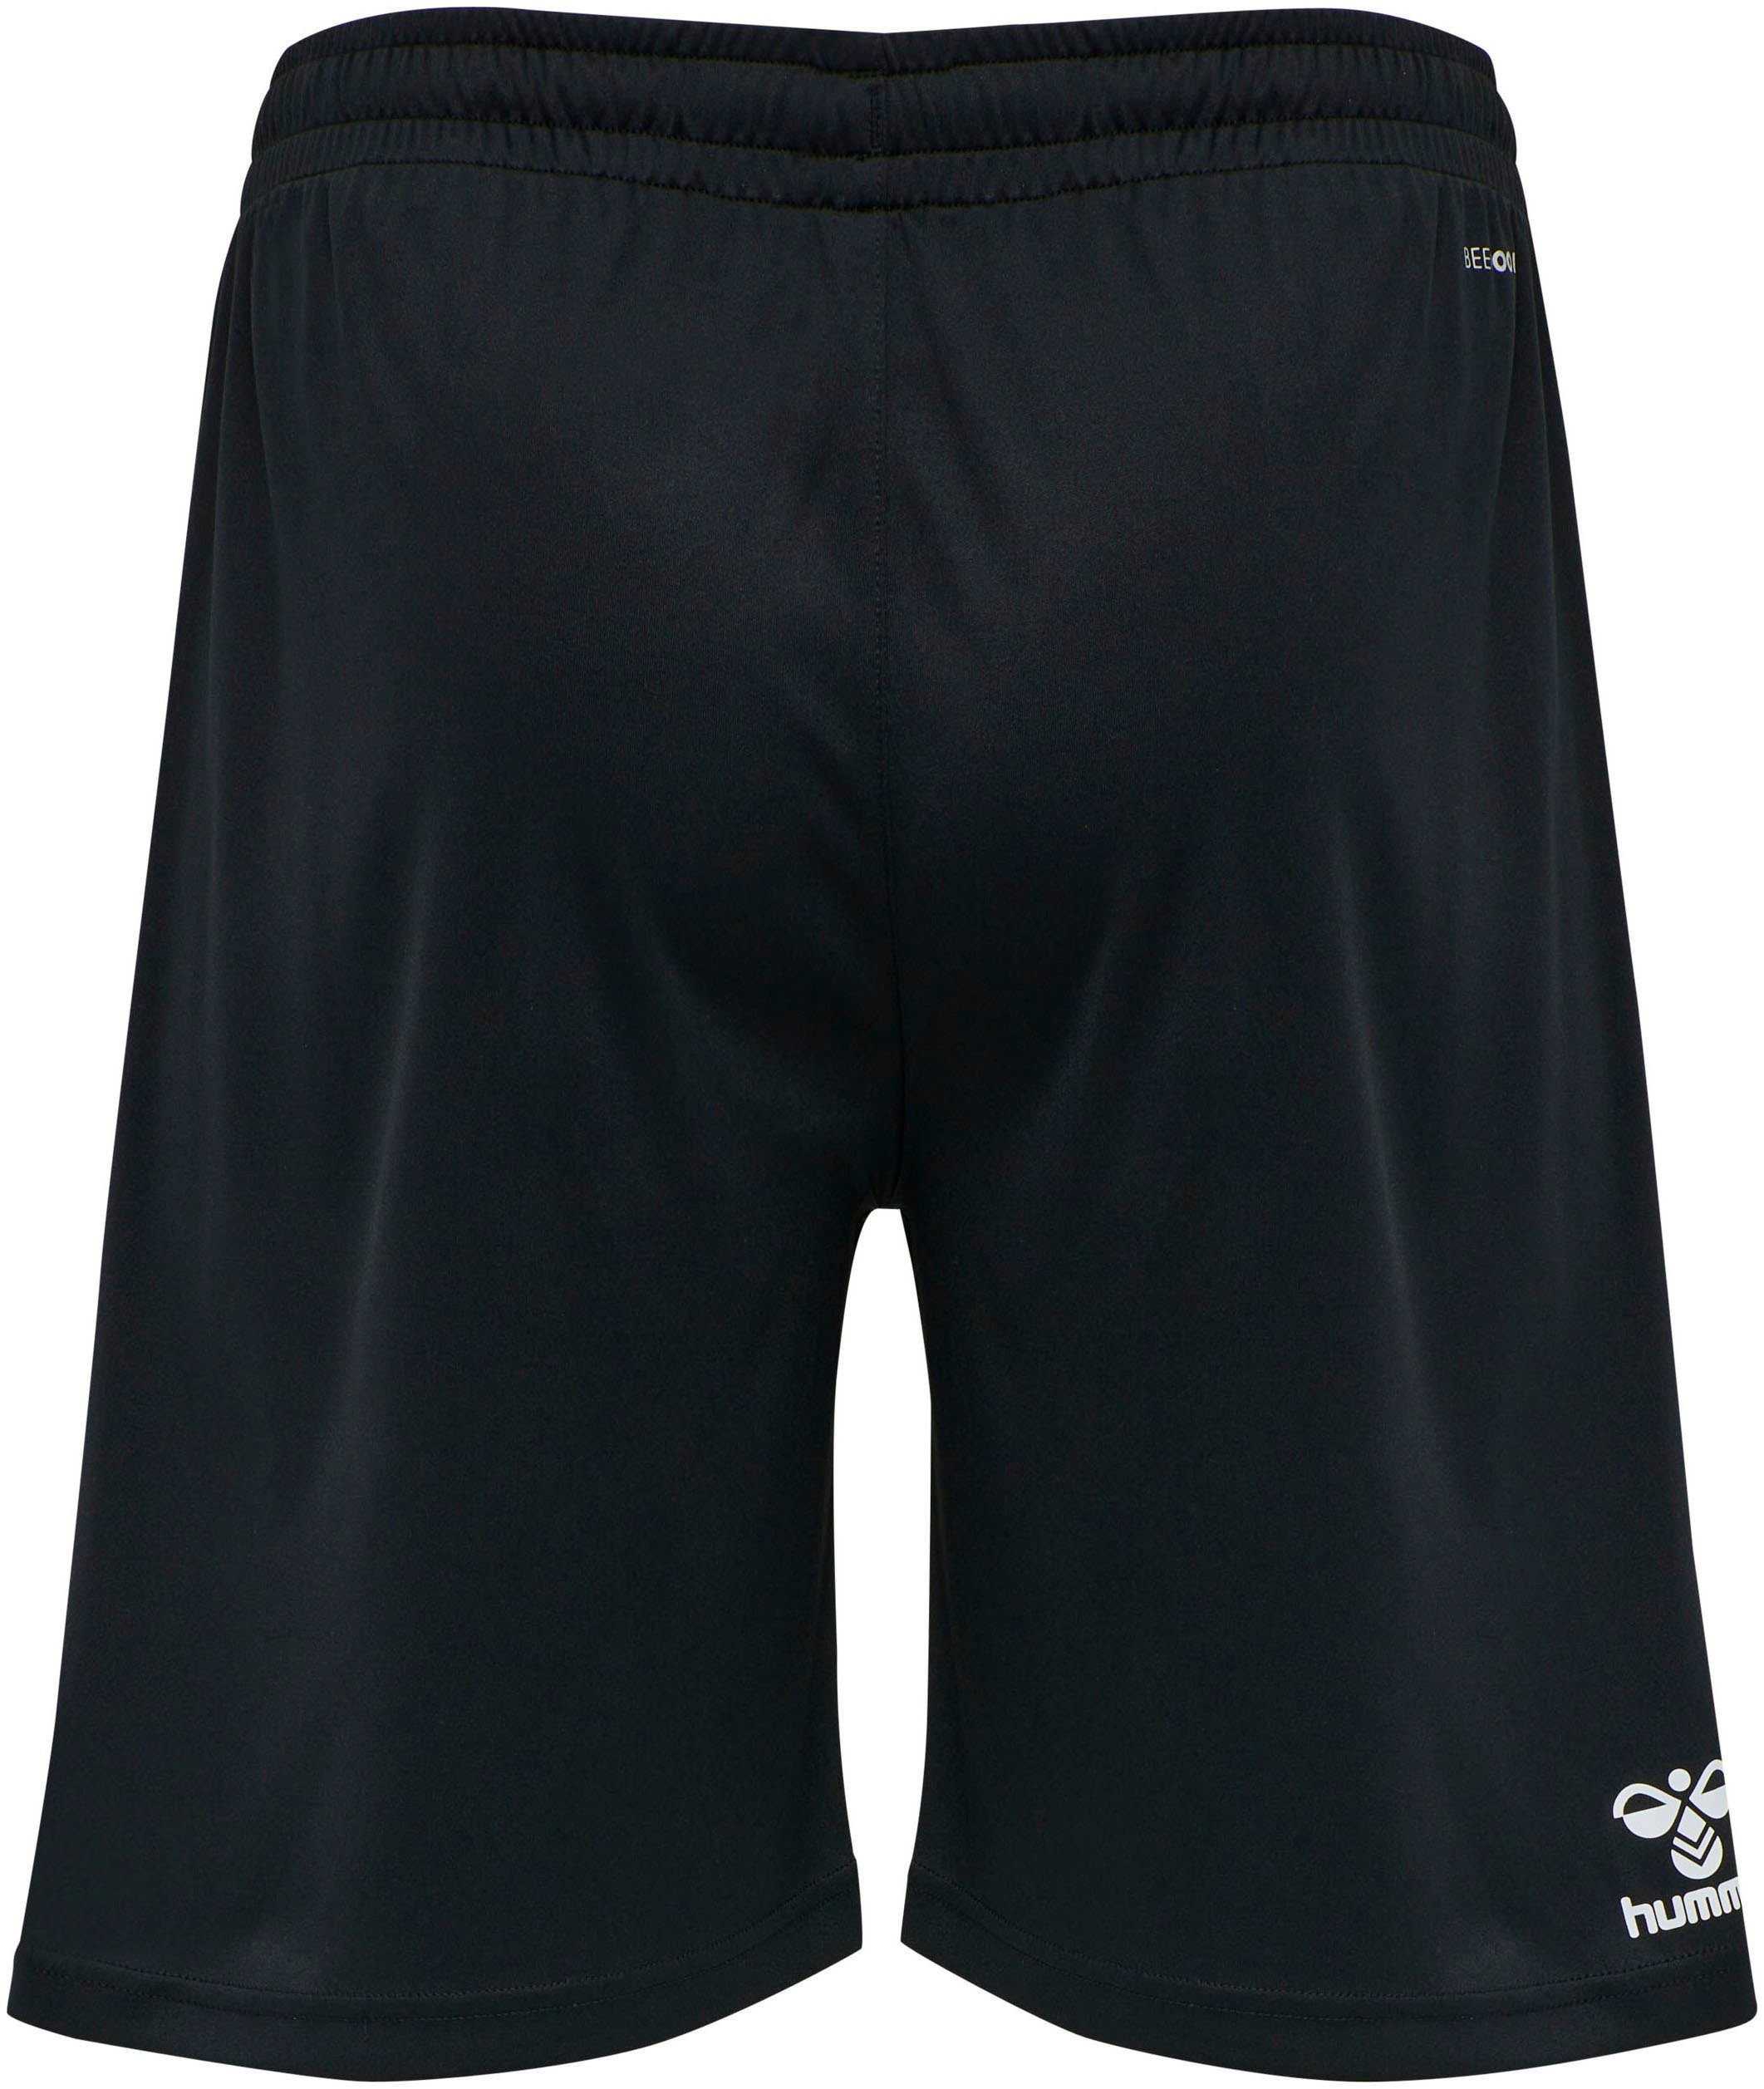 XK schwarz hmlCORE SHORTS POLY Shorts hummel